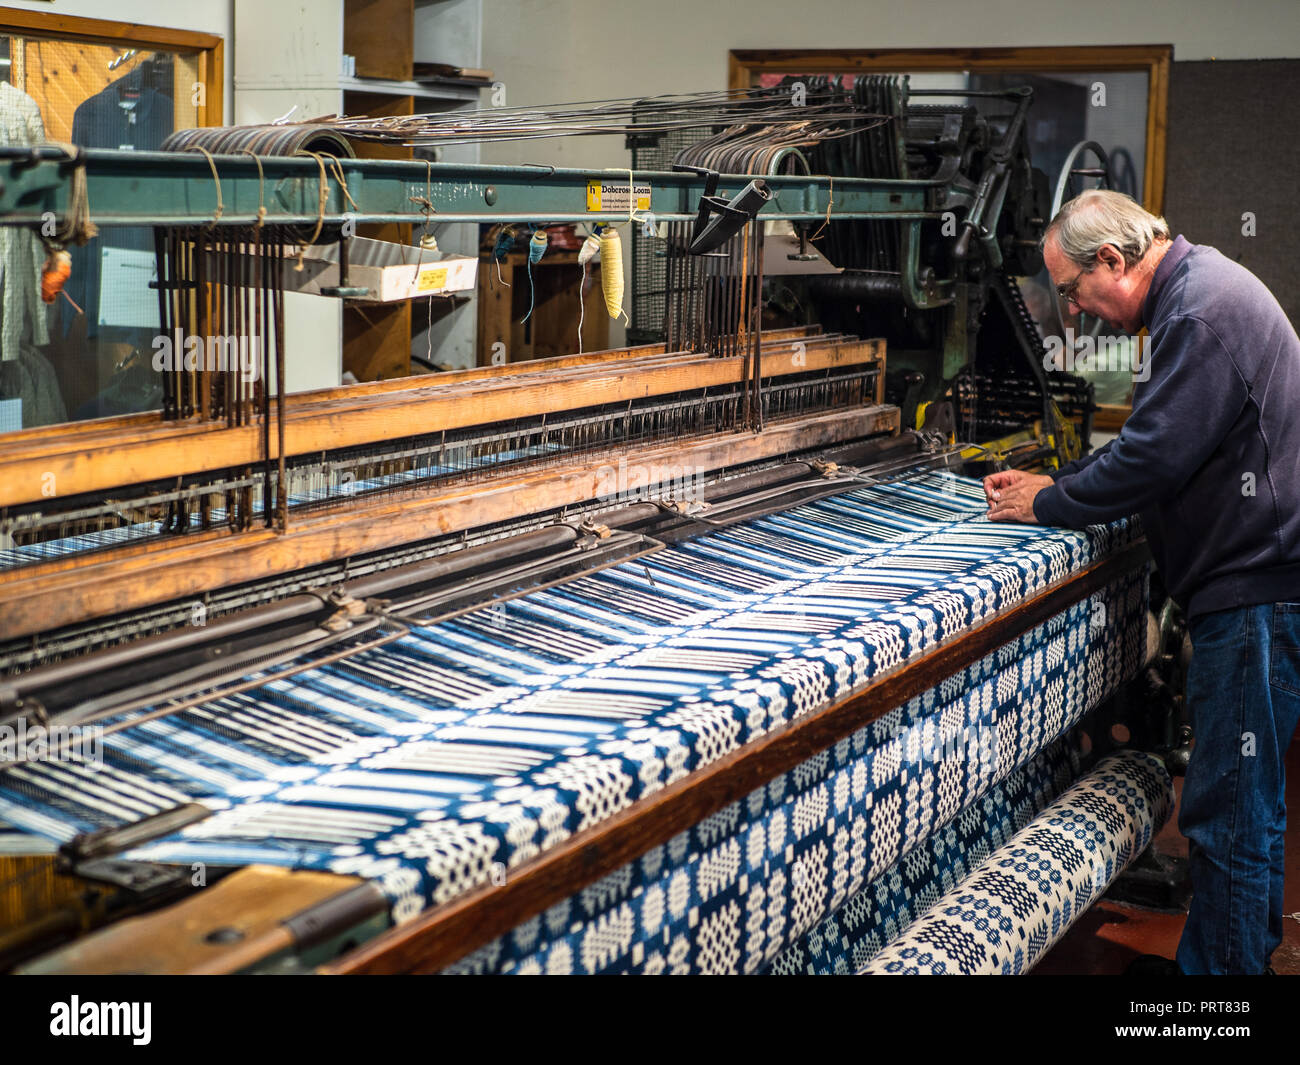 À Trefriw Woollen Mills N.Pays de Galles, l'un des derniers Woolen Mills toujours en production au pays de Galles. Connu pour le tissage traditionnel double-couvertures. Banque D'Images